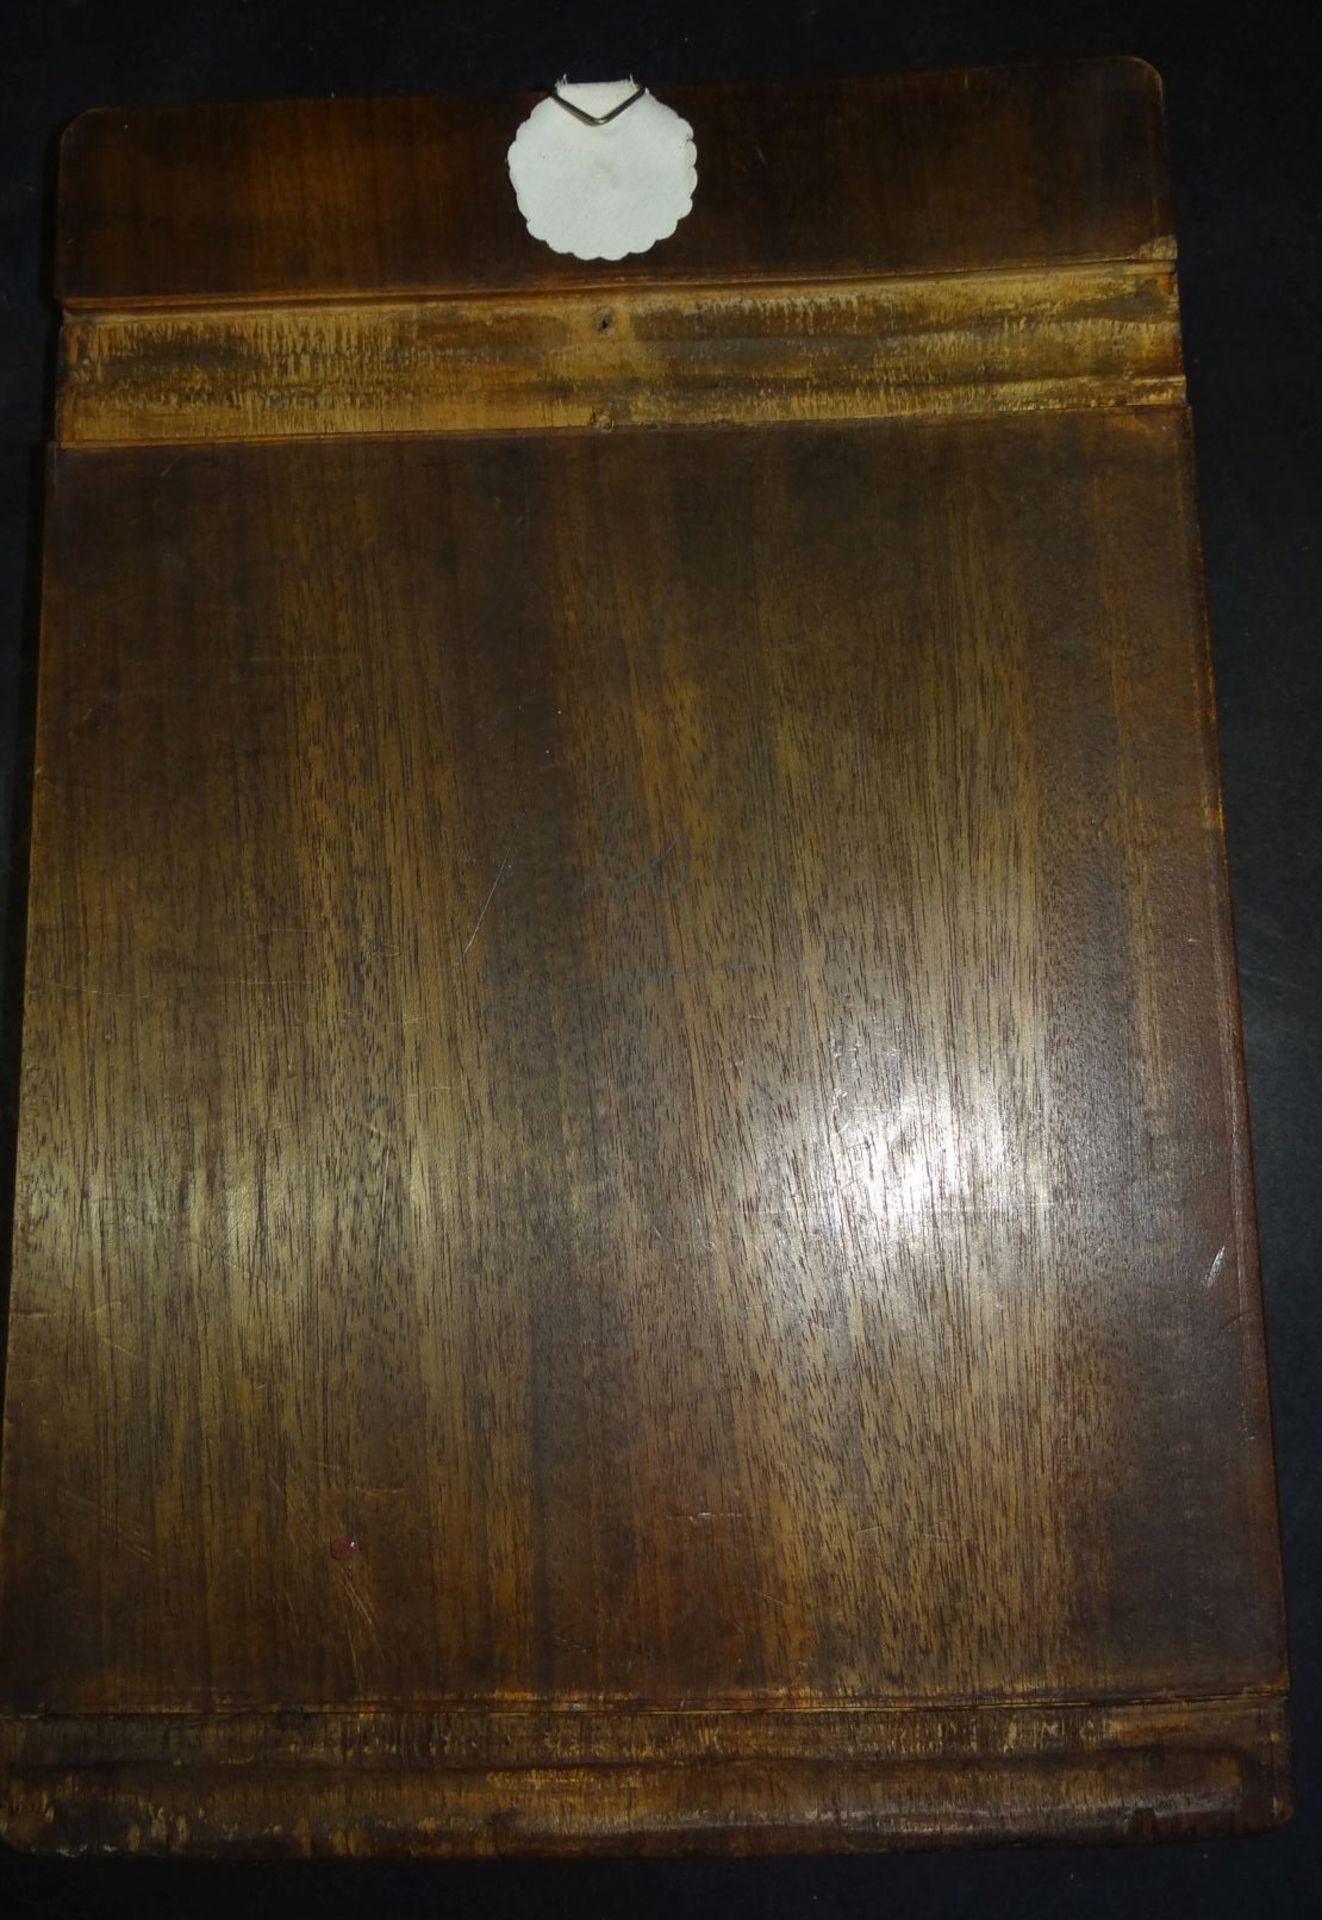 Holzplatte m it Perlmutt Einlagen etc., wohl Japan, 26x17 cm, kl. Fehlteile - Bild 4 aus 4